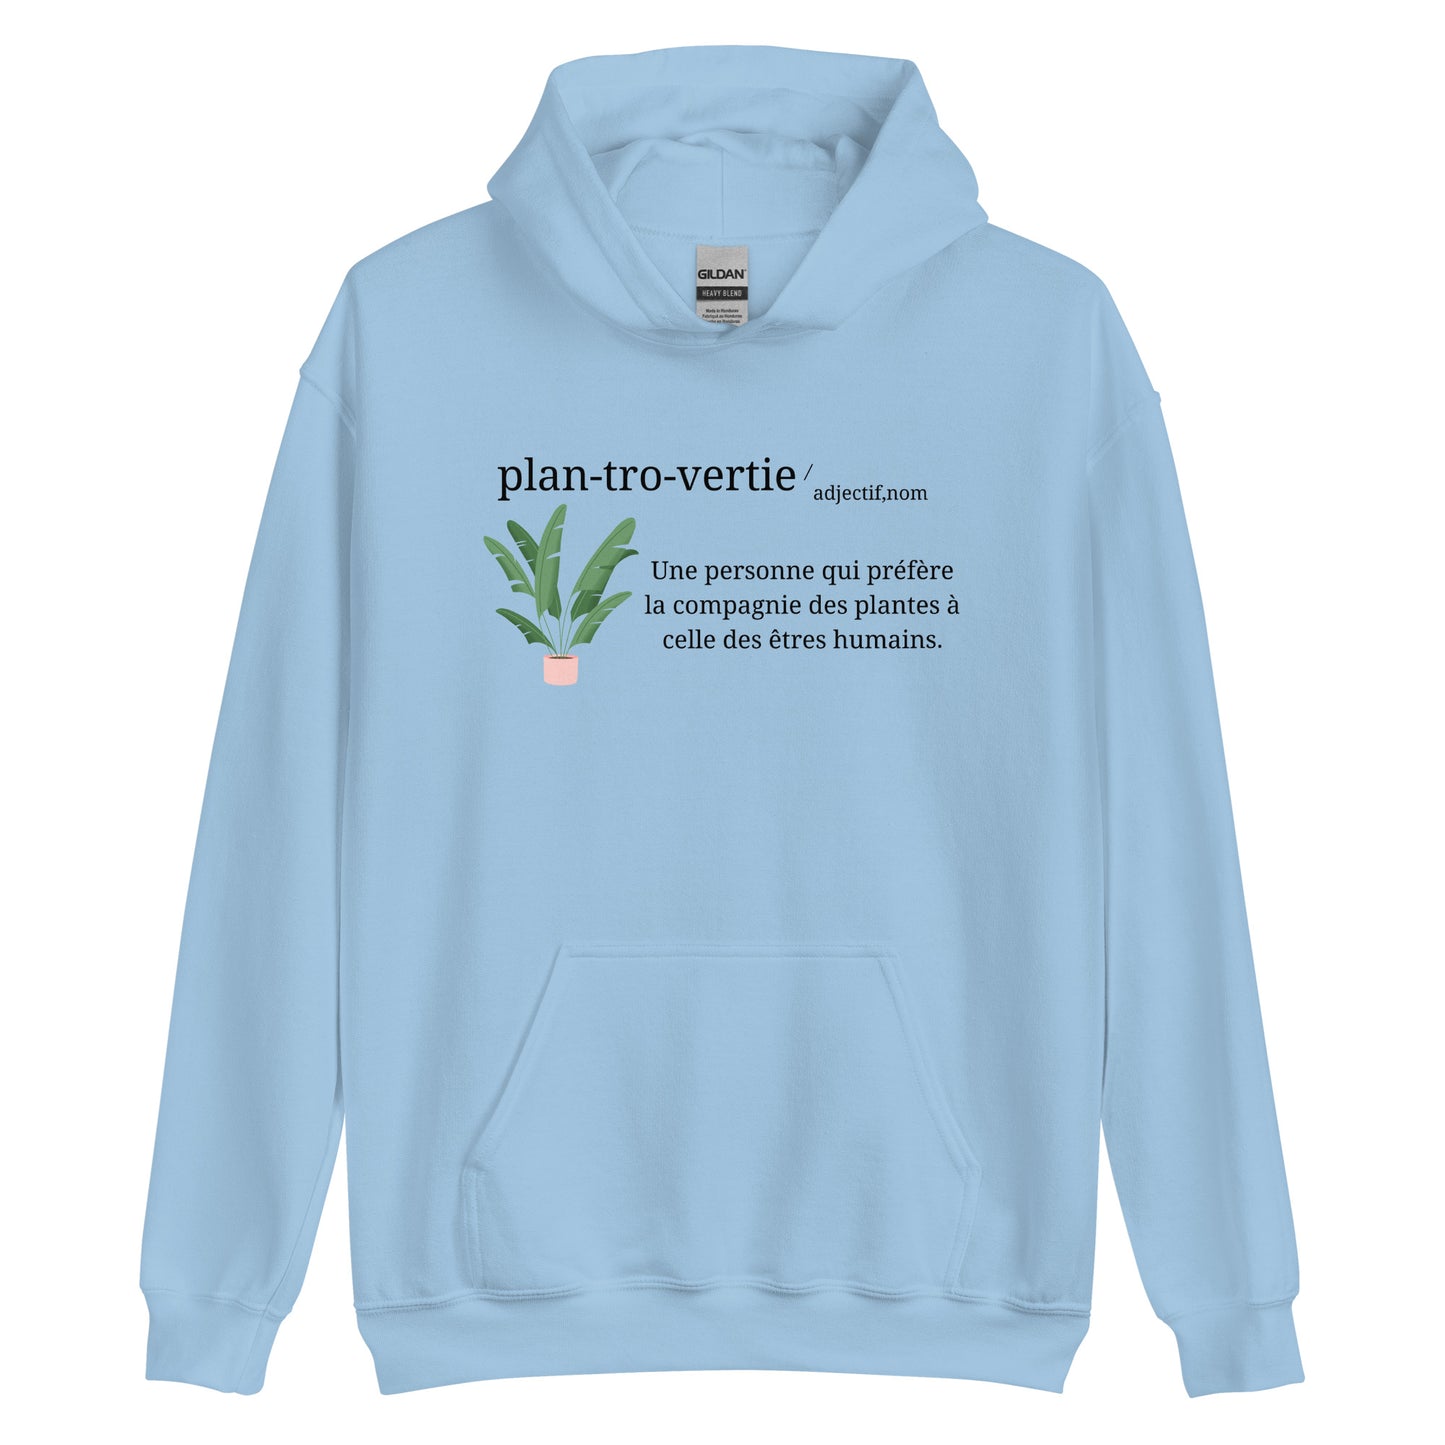 Hoodie - Plantrovertie